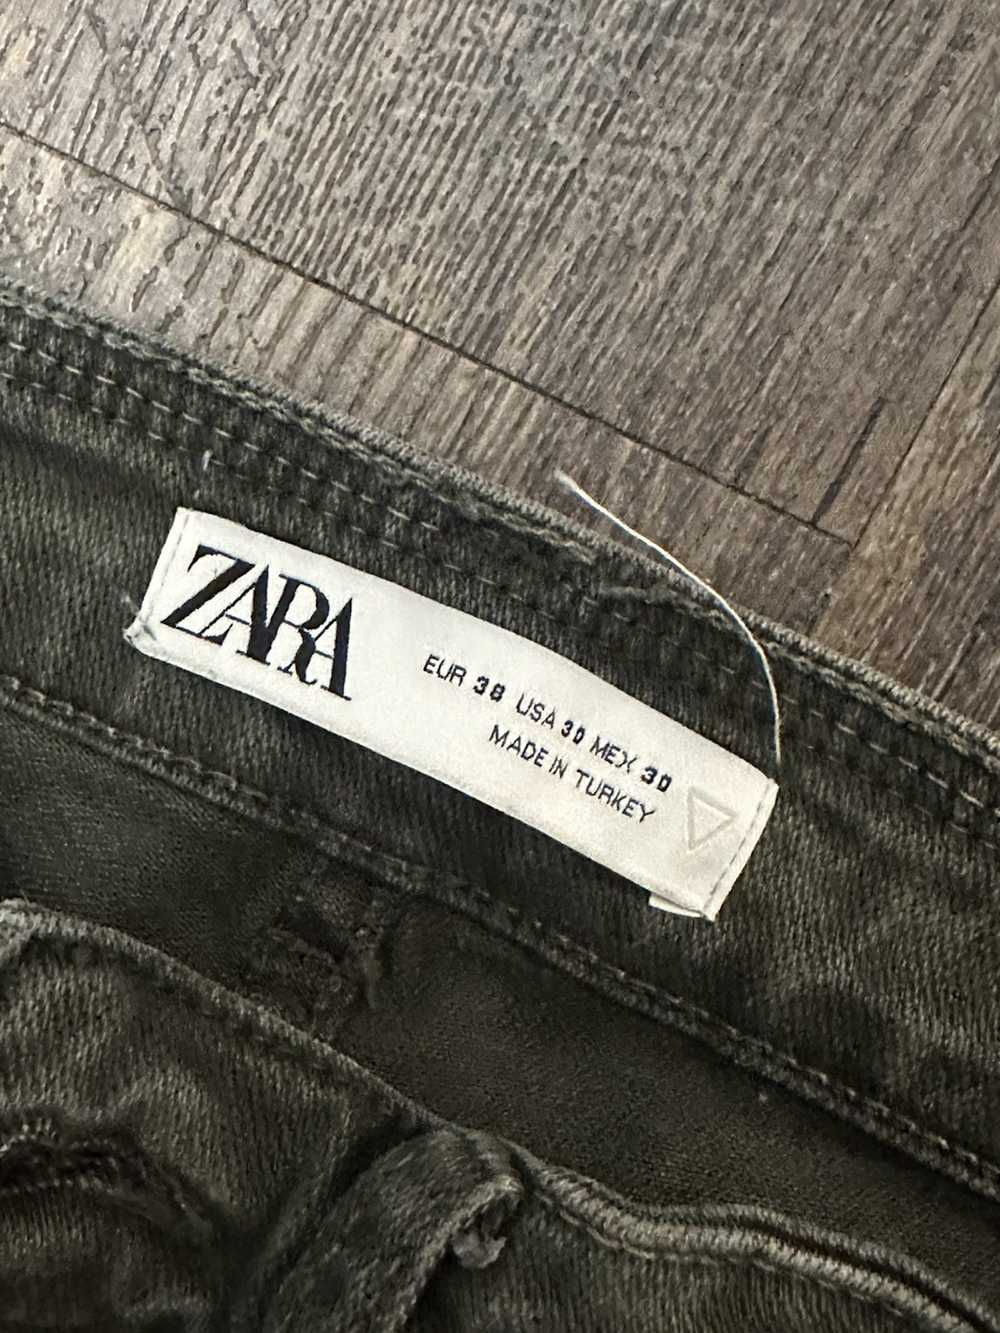 Zara Zara Jeans - image 2